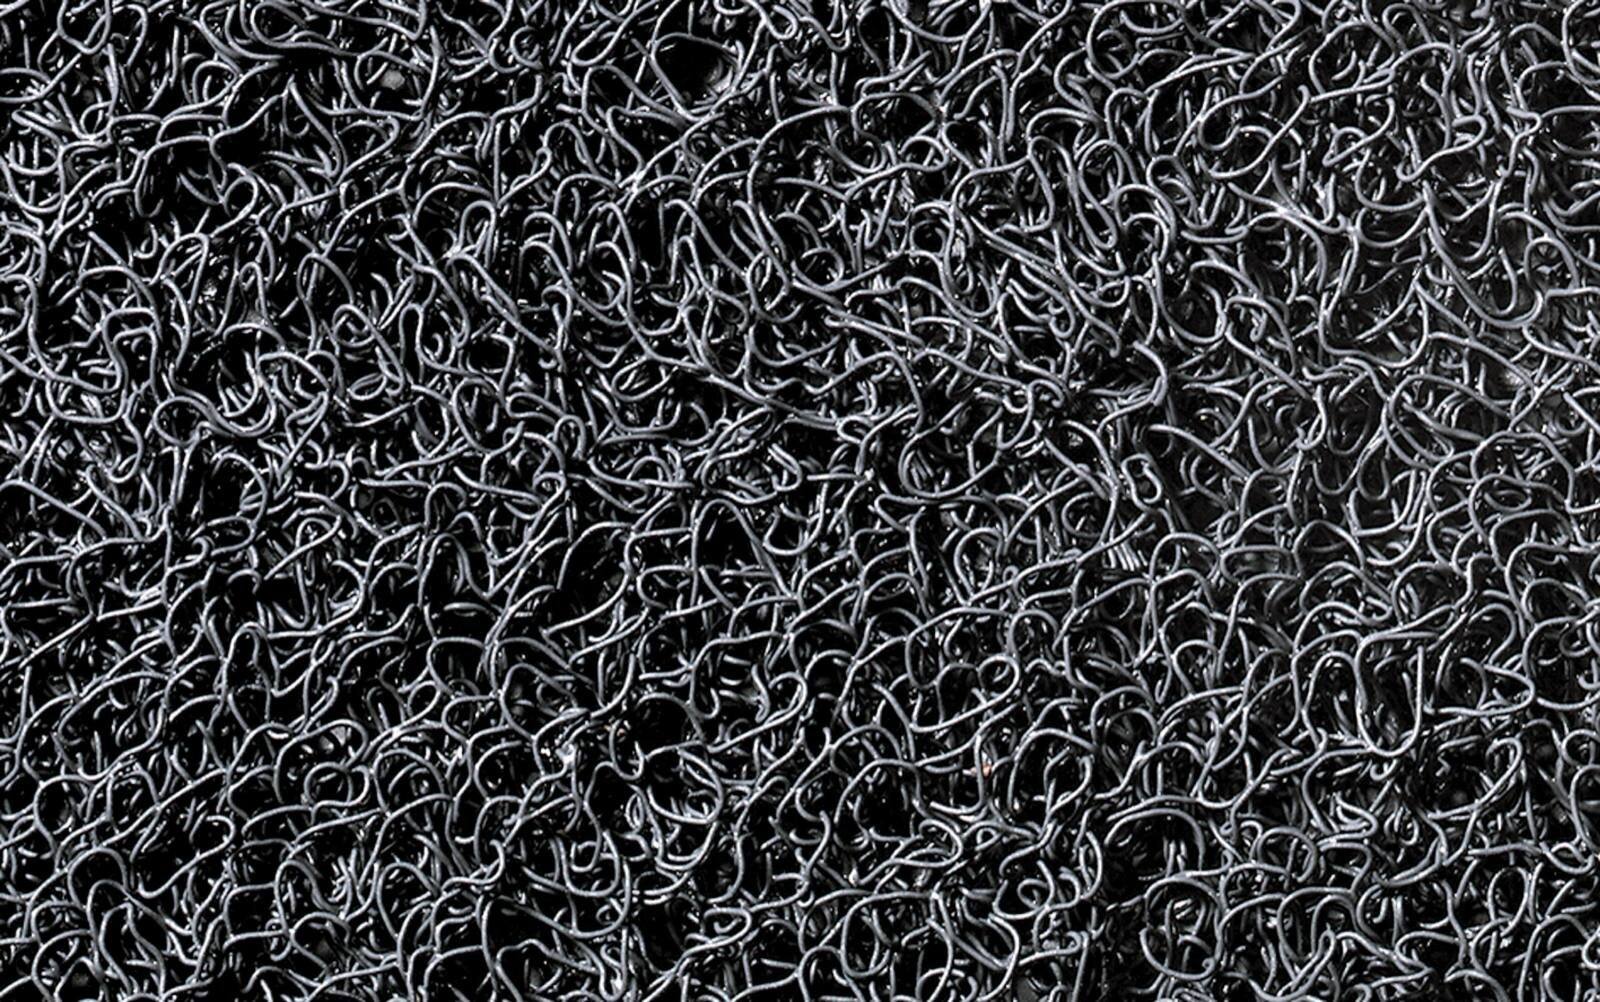 tappeto antipolvere 3M Nomad Terra 8200, grigio, 6m x 1,2m